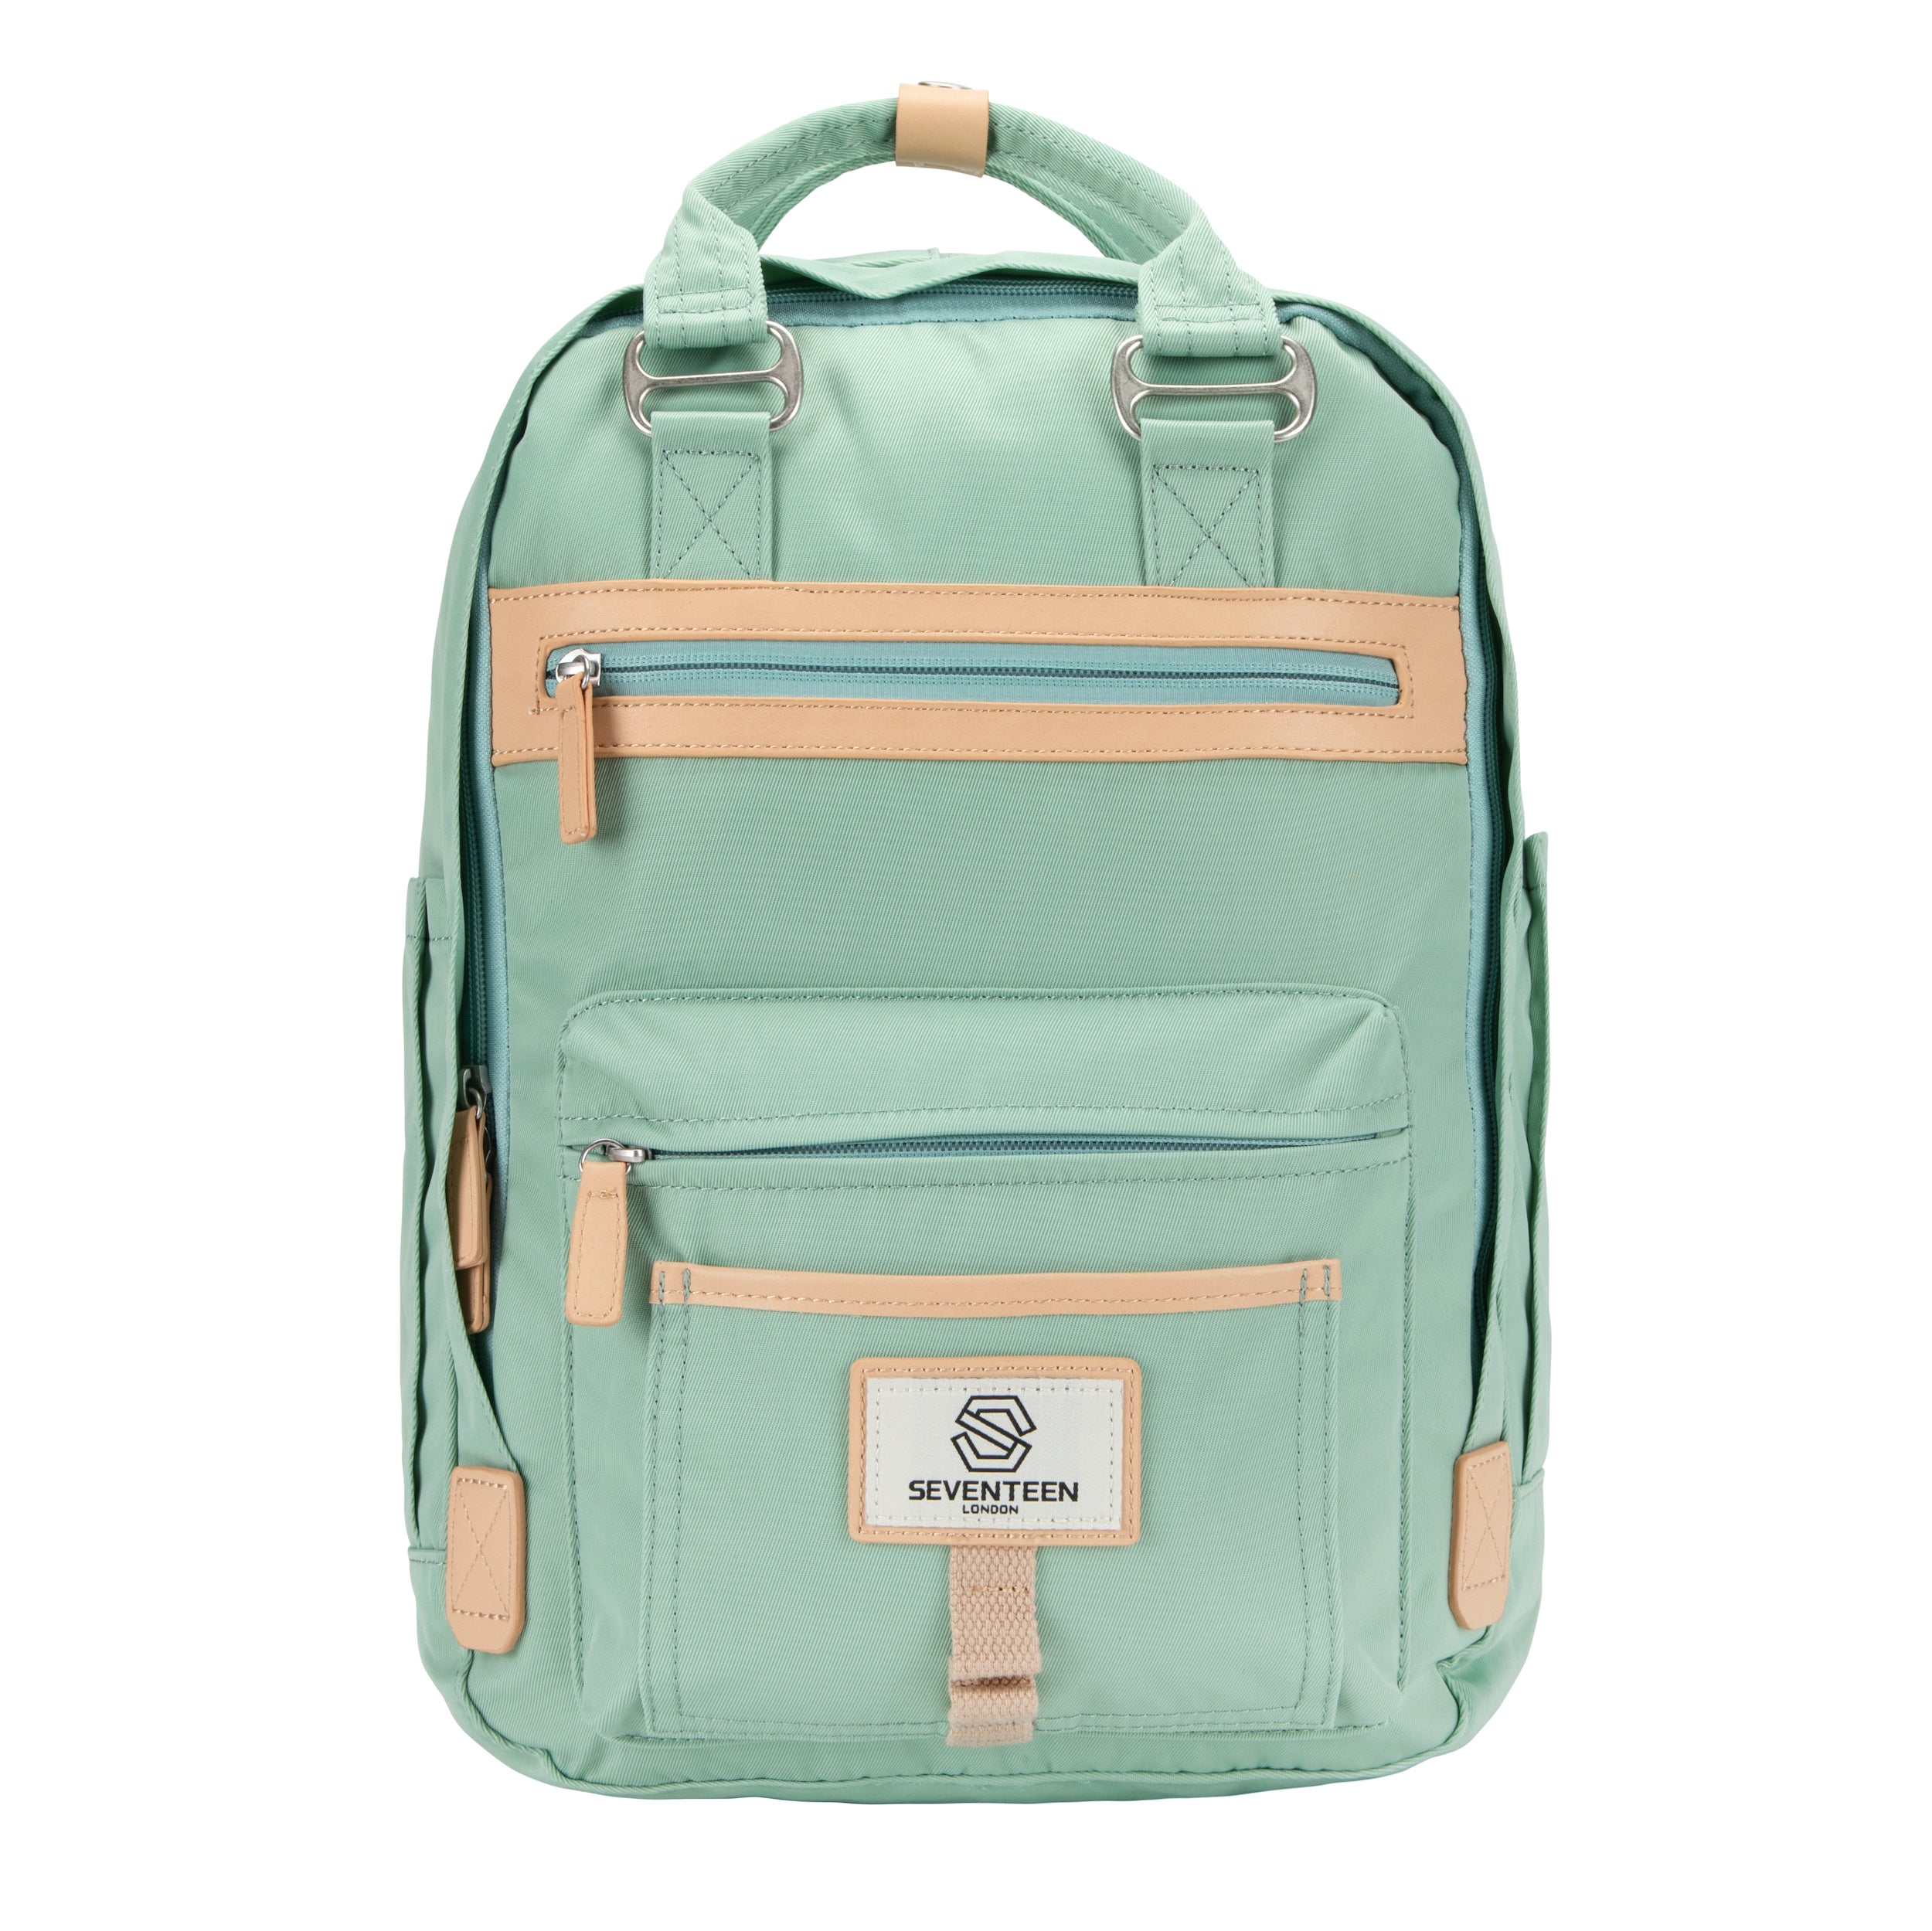 Wimbledon Backpack - Pastel Green - Seventeen London